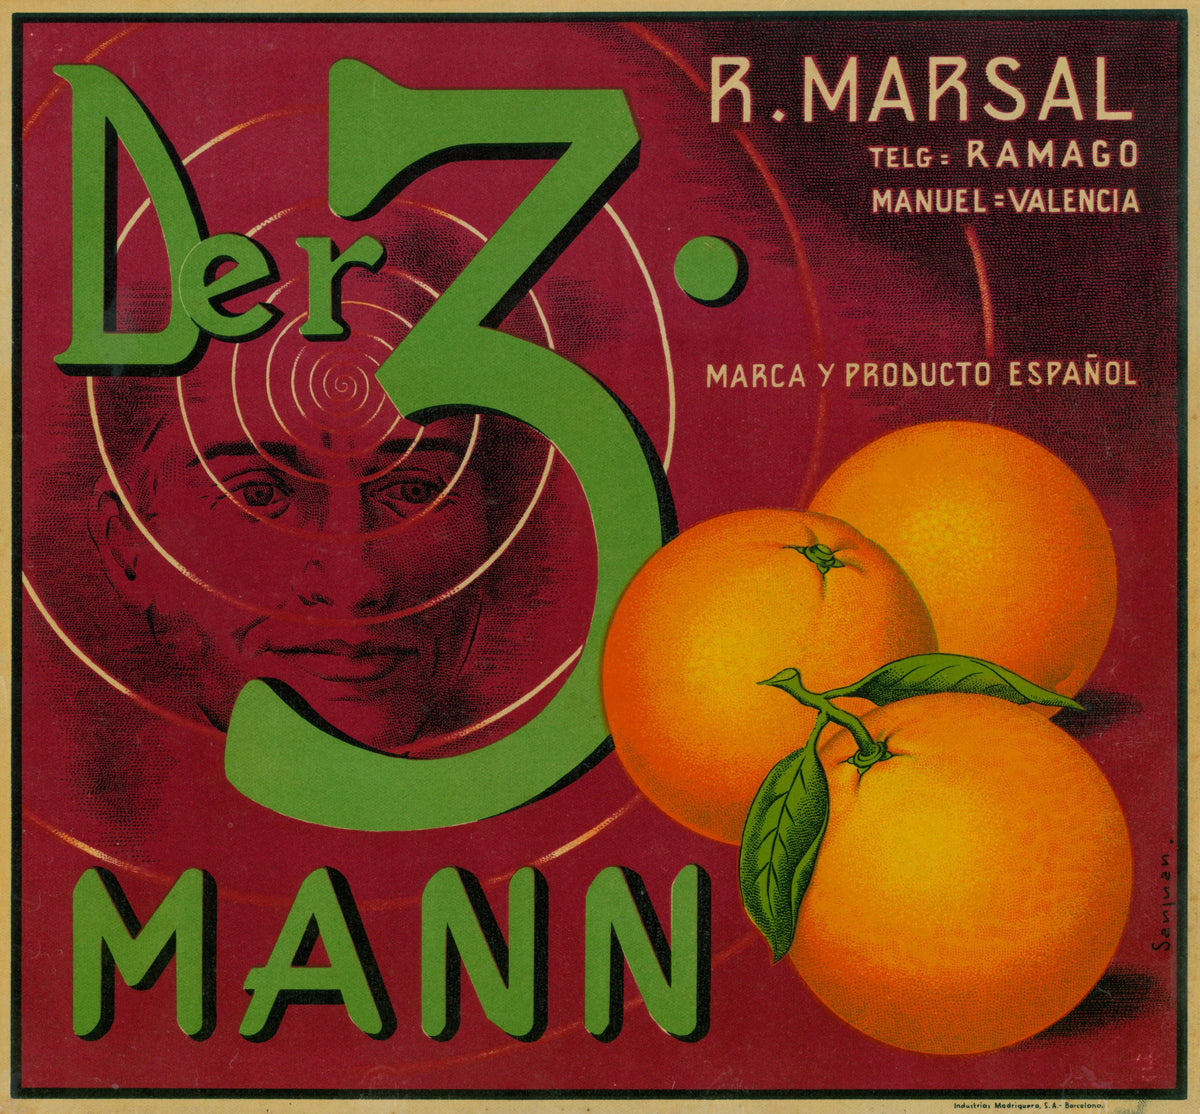 Der 3. Mann- Spanish Crate Label - Authentic Vintage Antique Print